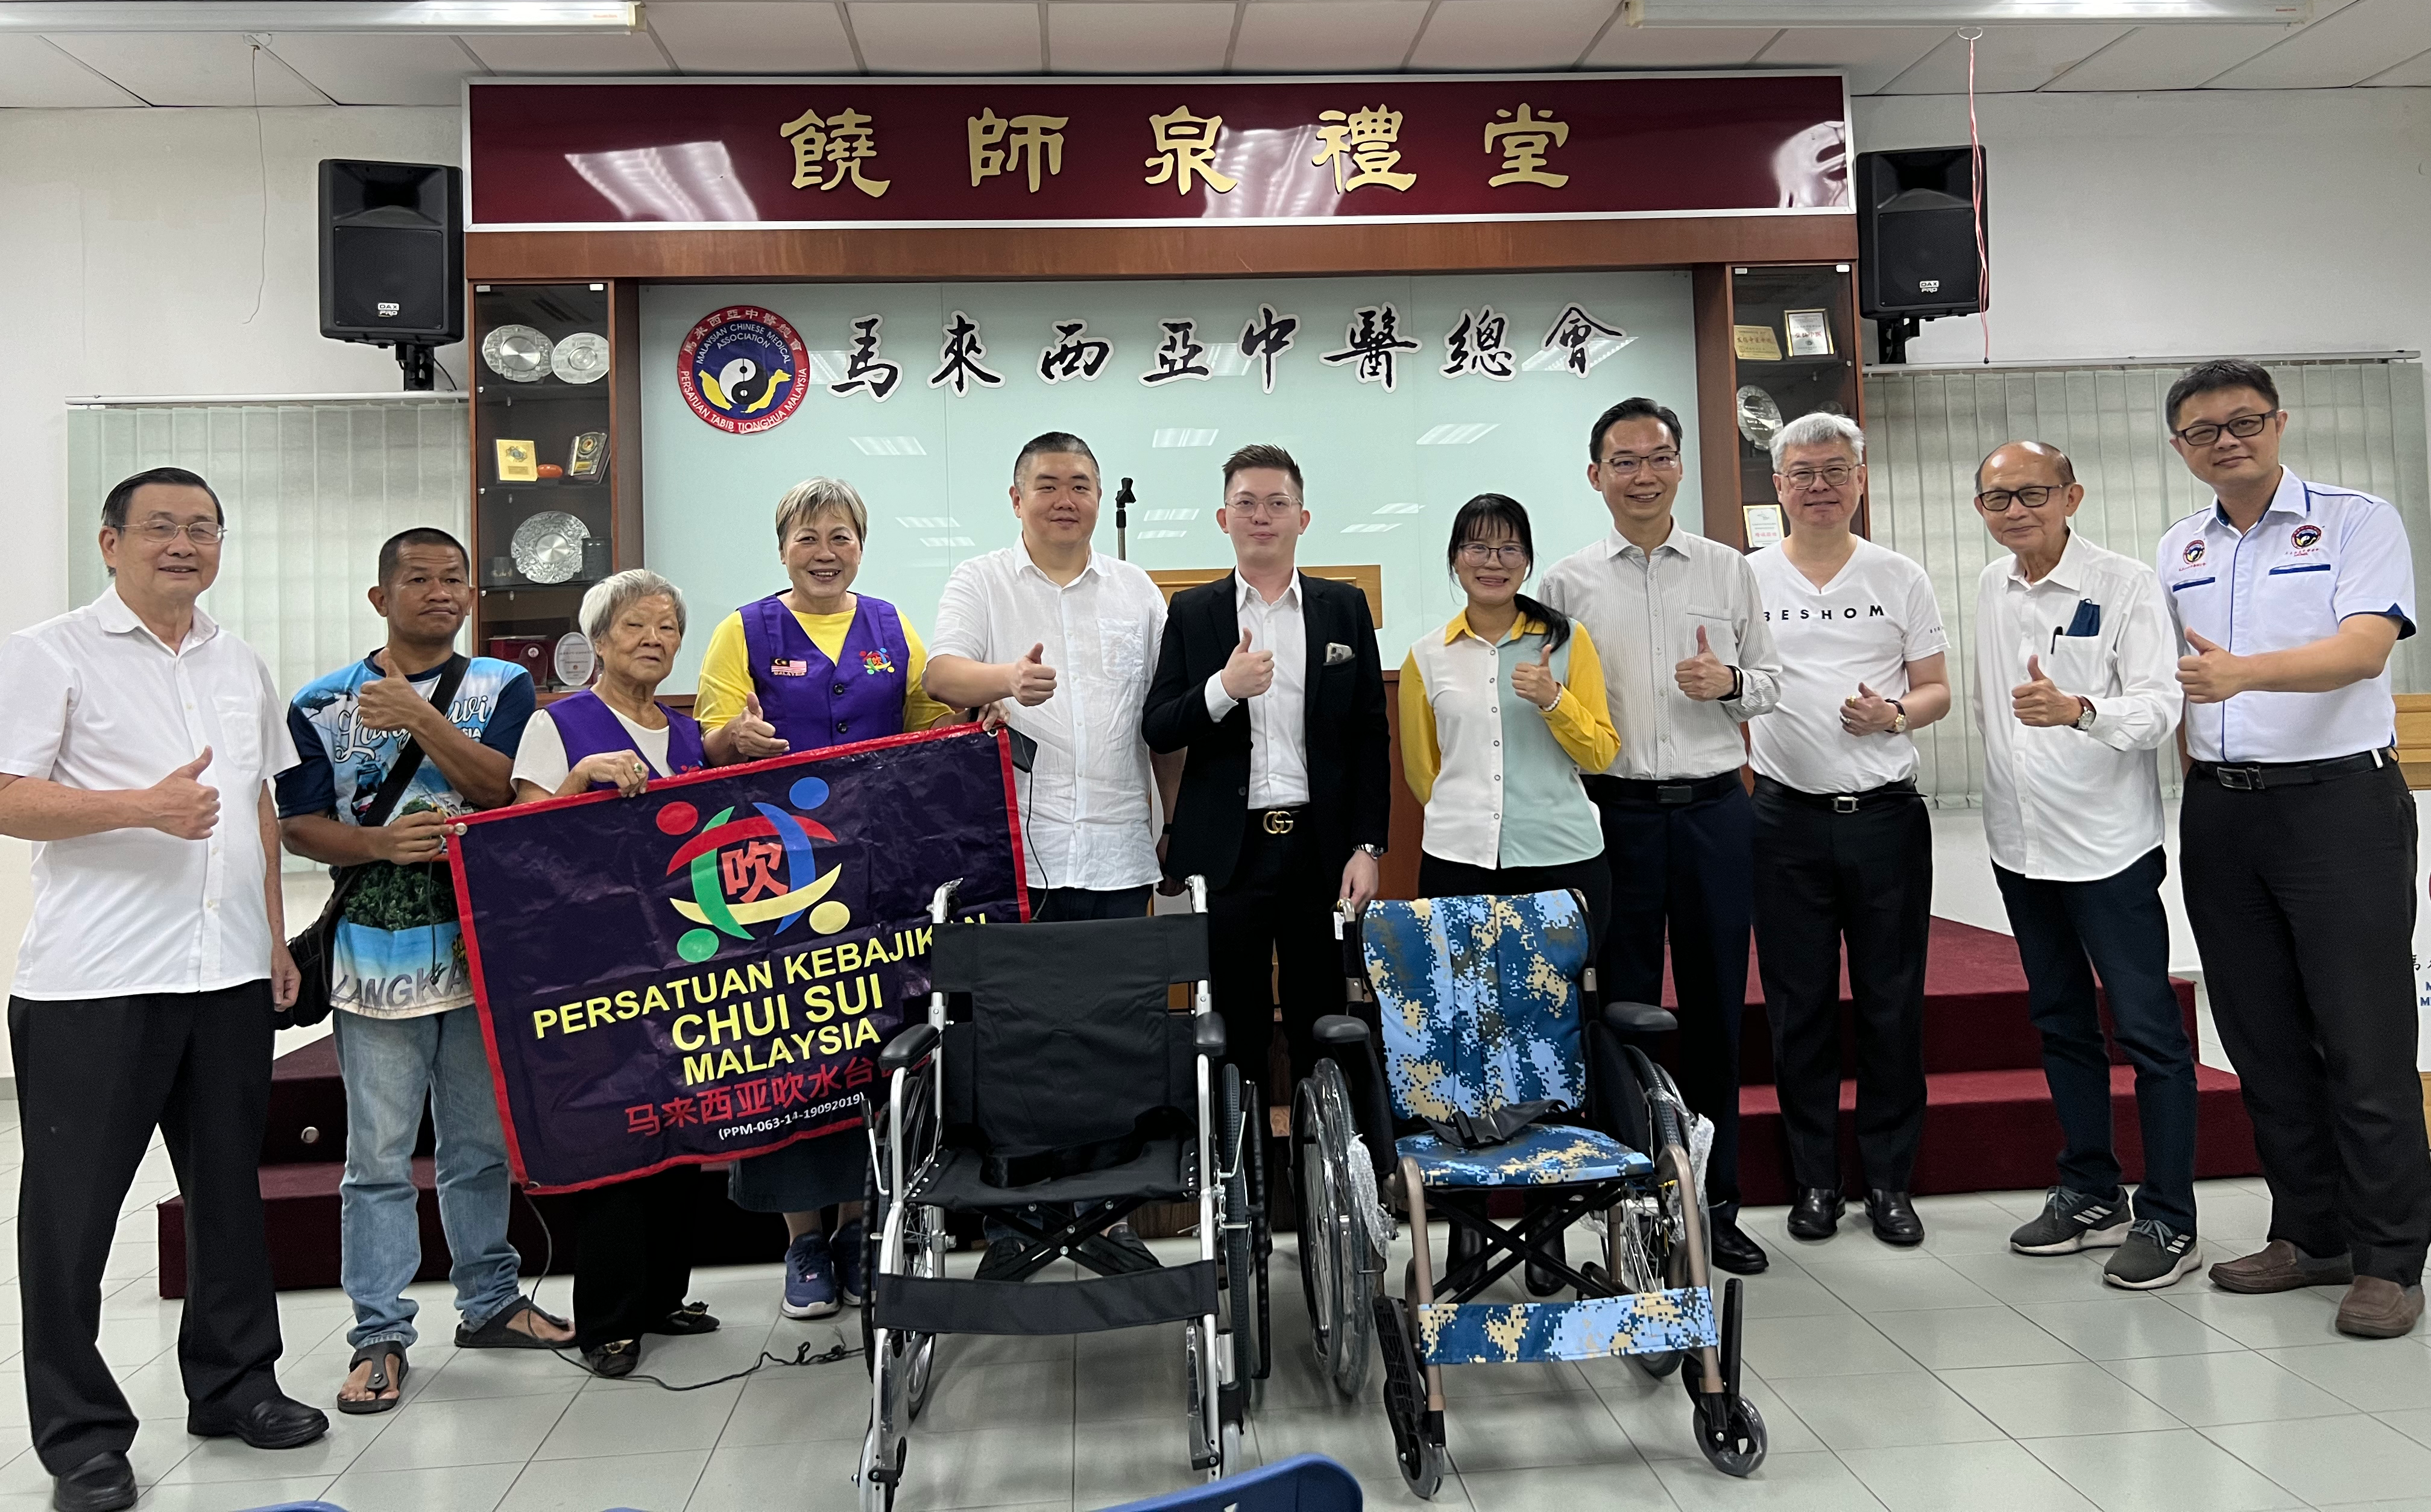 中华施诊所受益轮椅捐赠